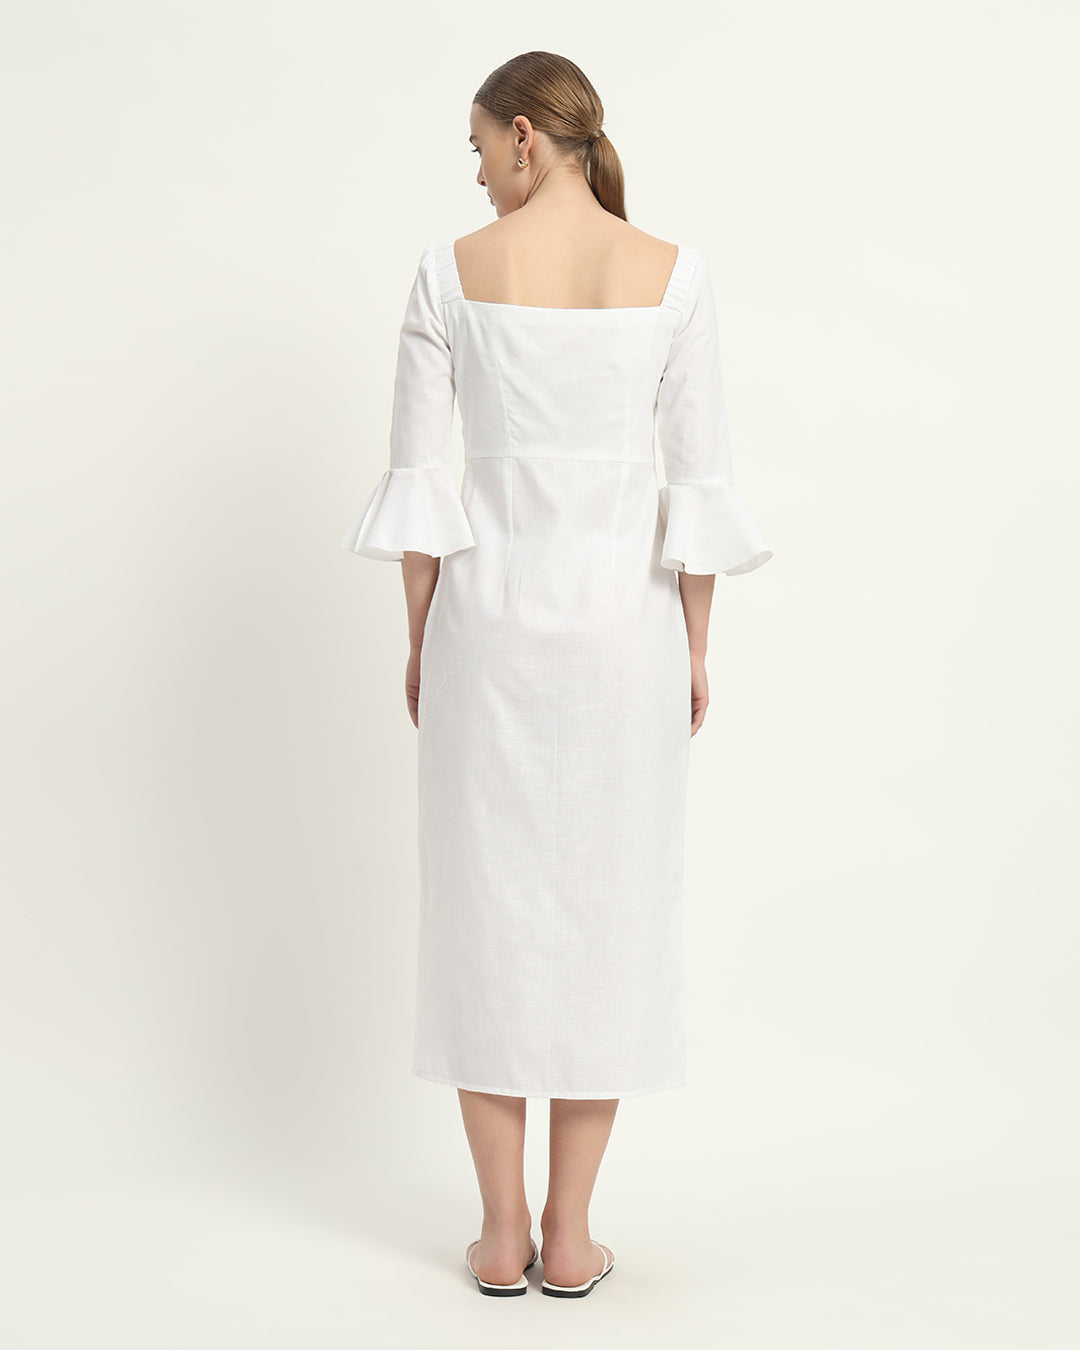 The Rosendale Daisy White Linen Dress